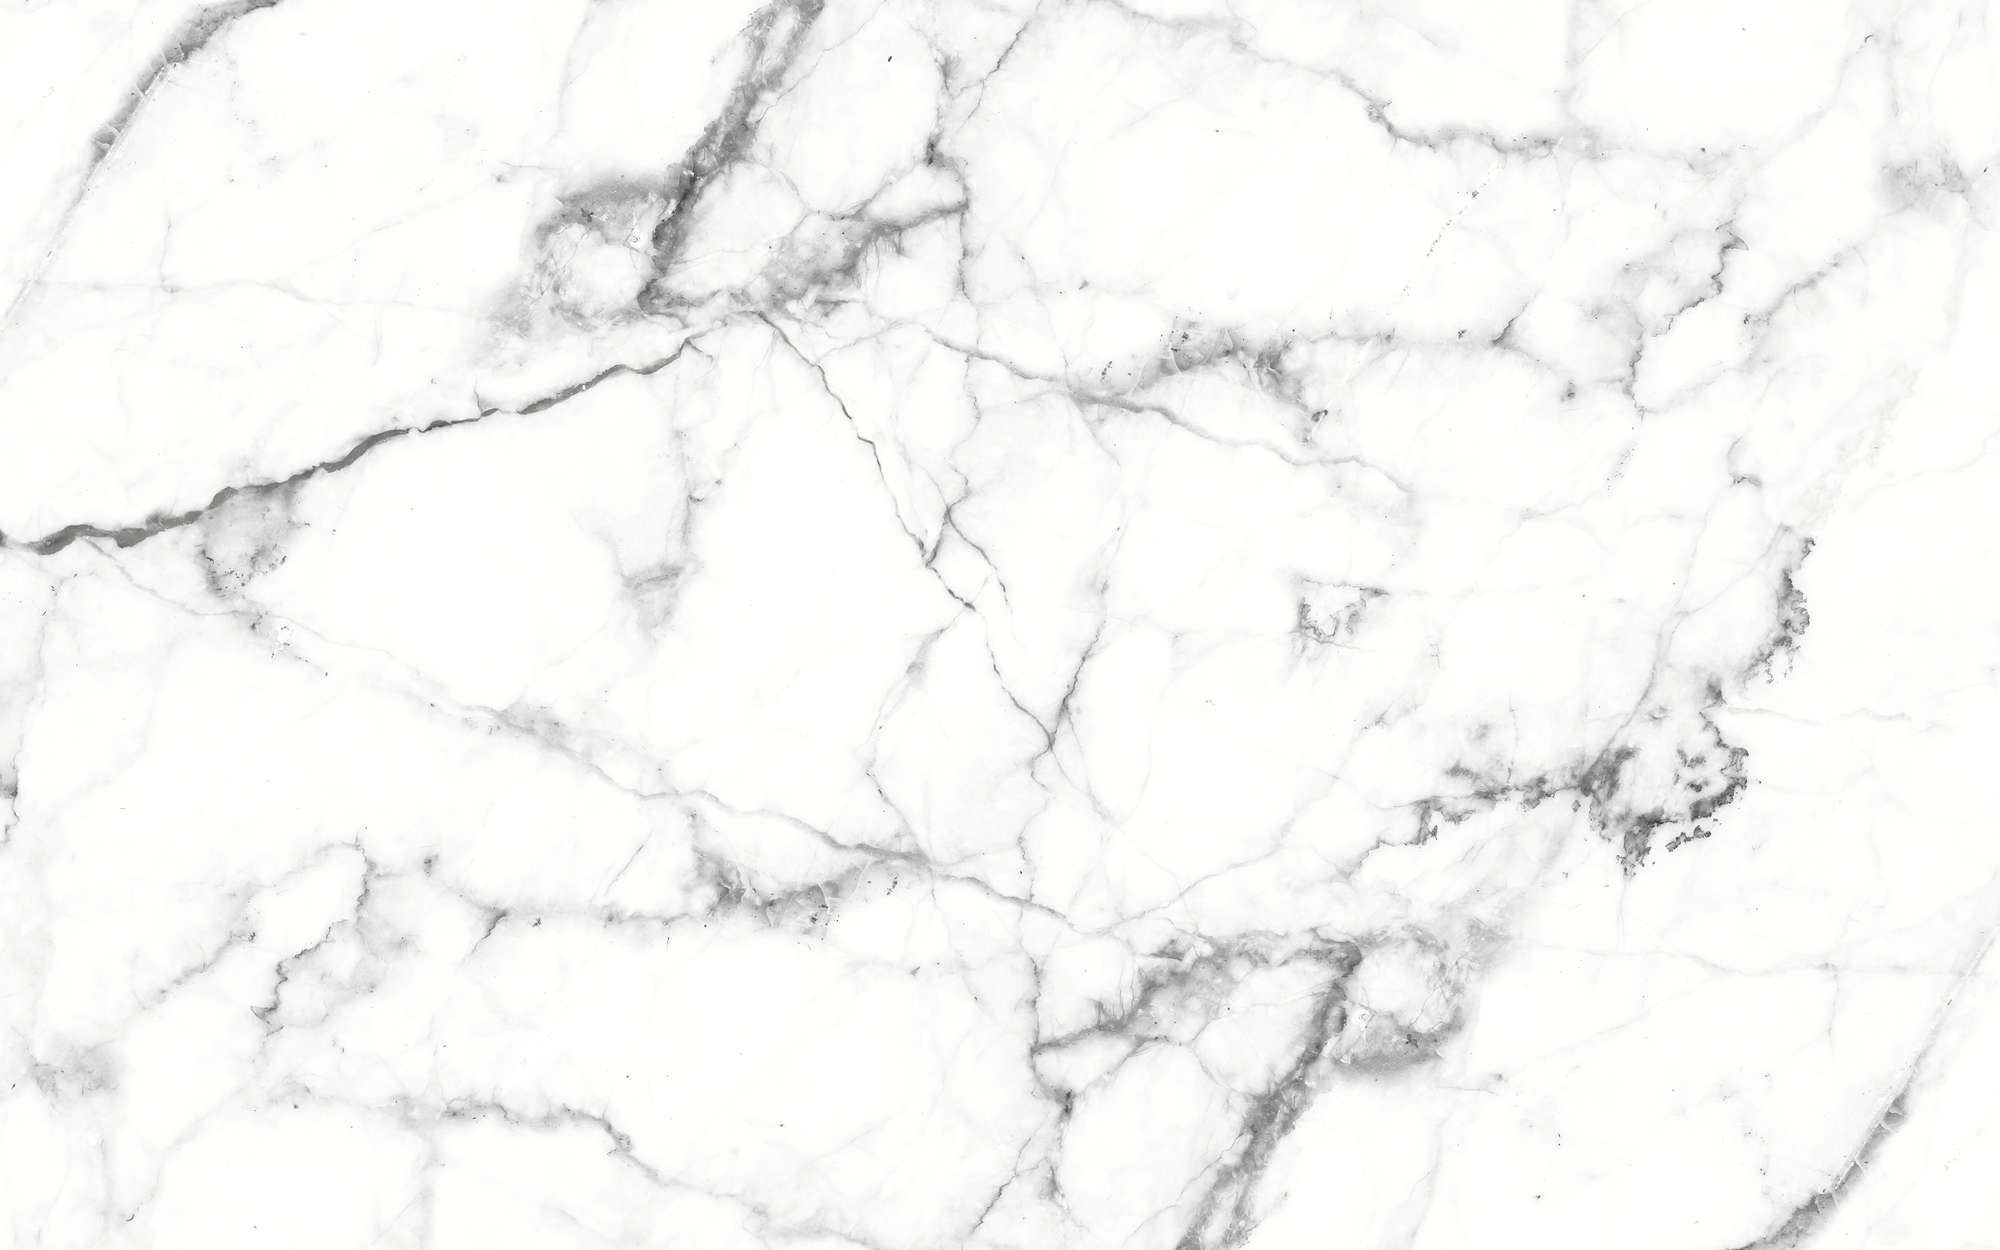             Papier peint panoramique marbre blanc marbré élégant - blanc, noir
        